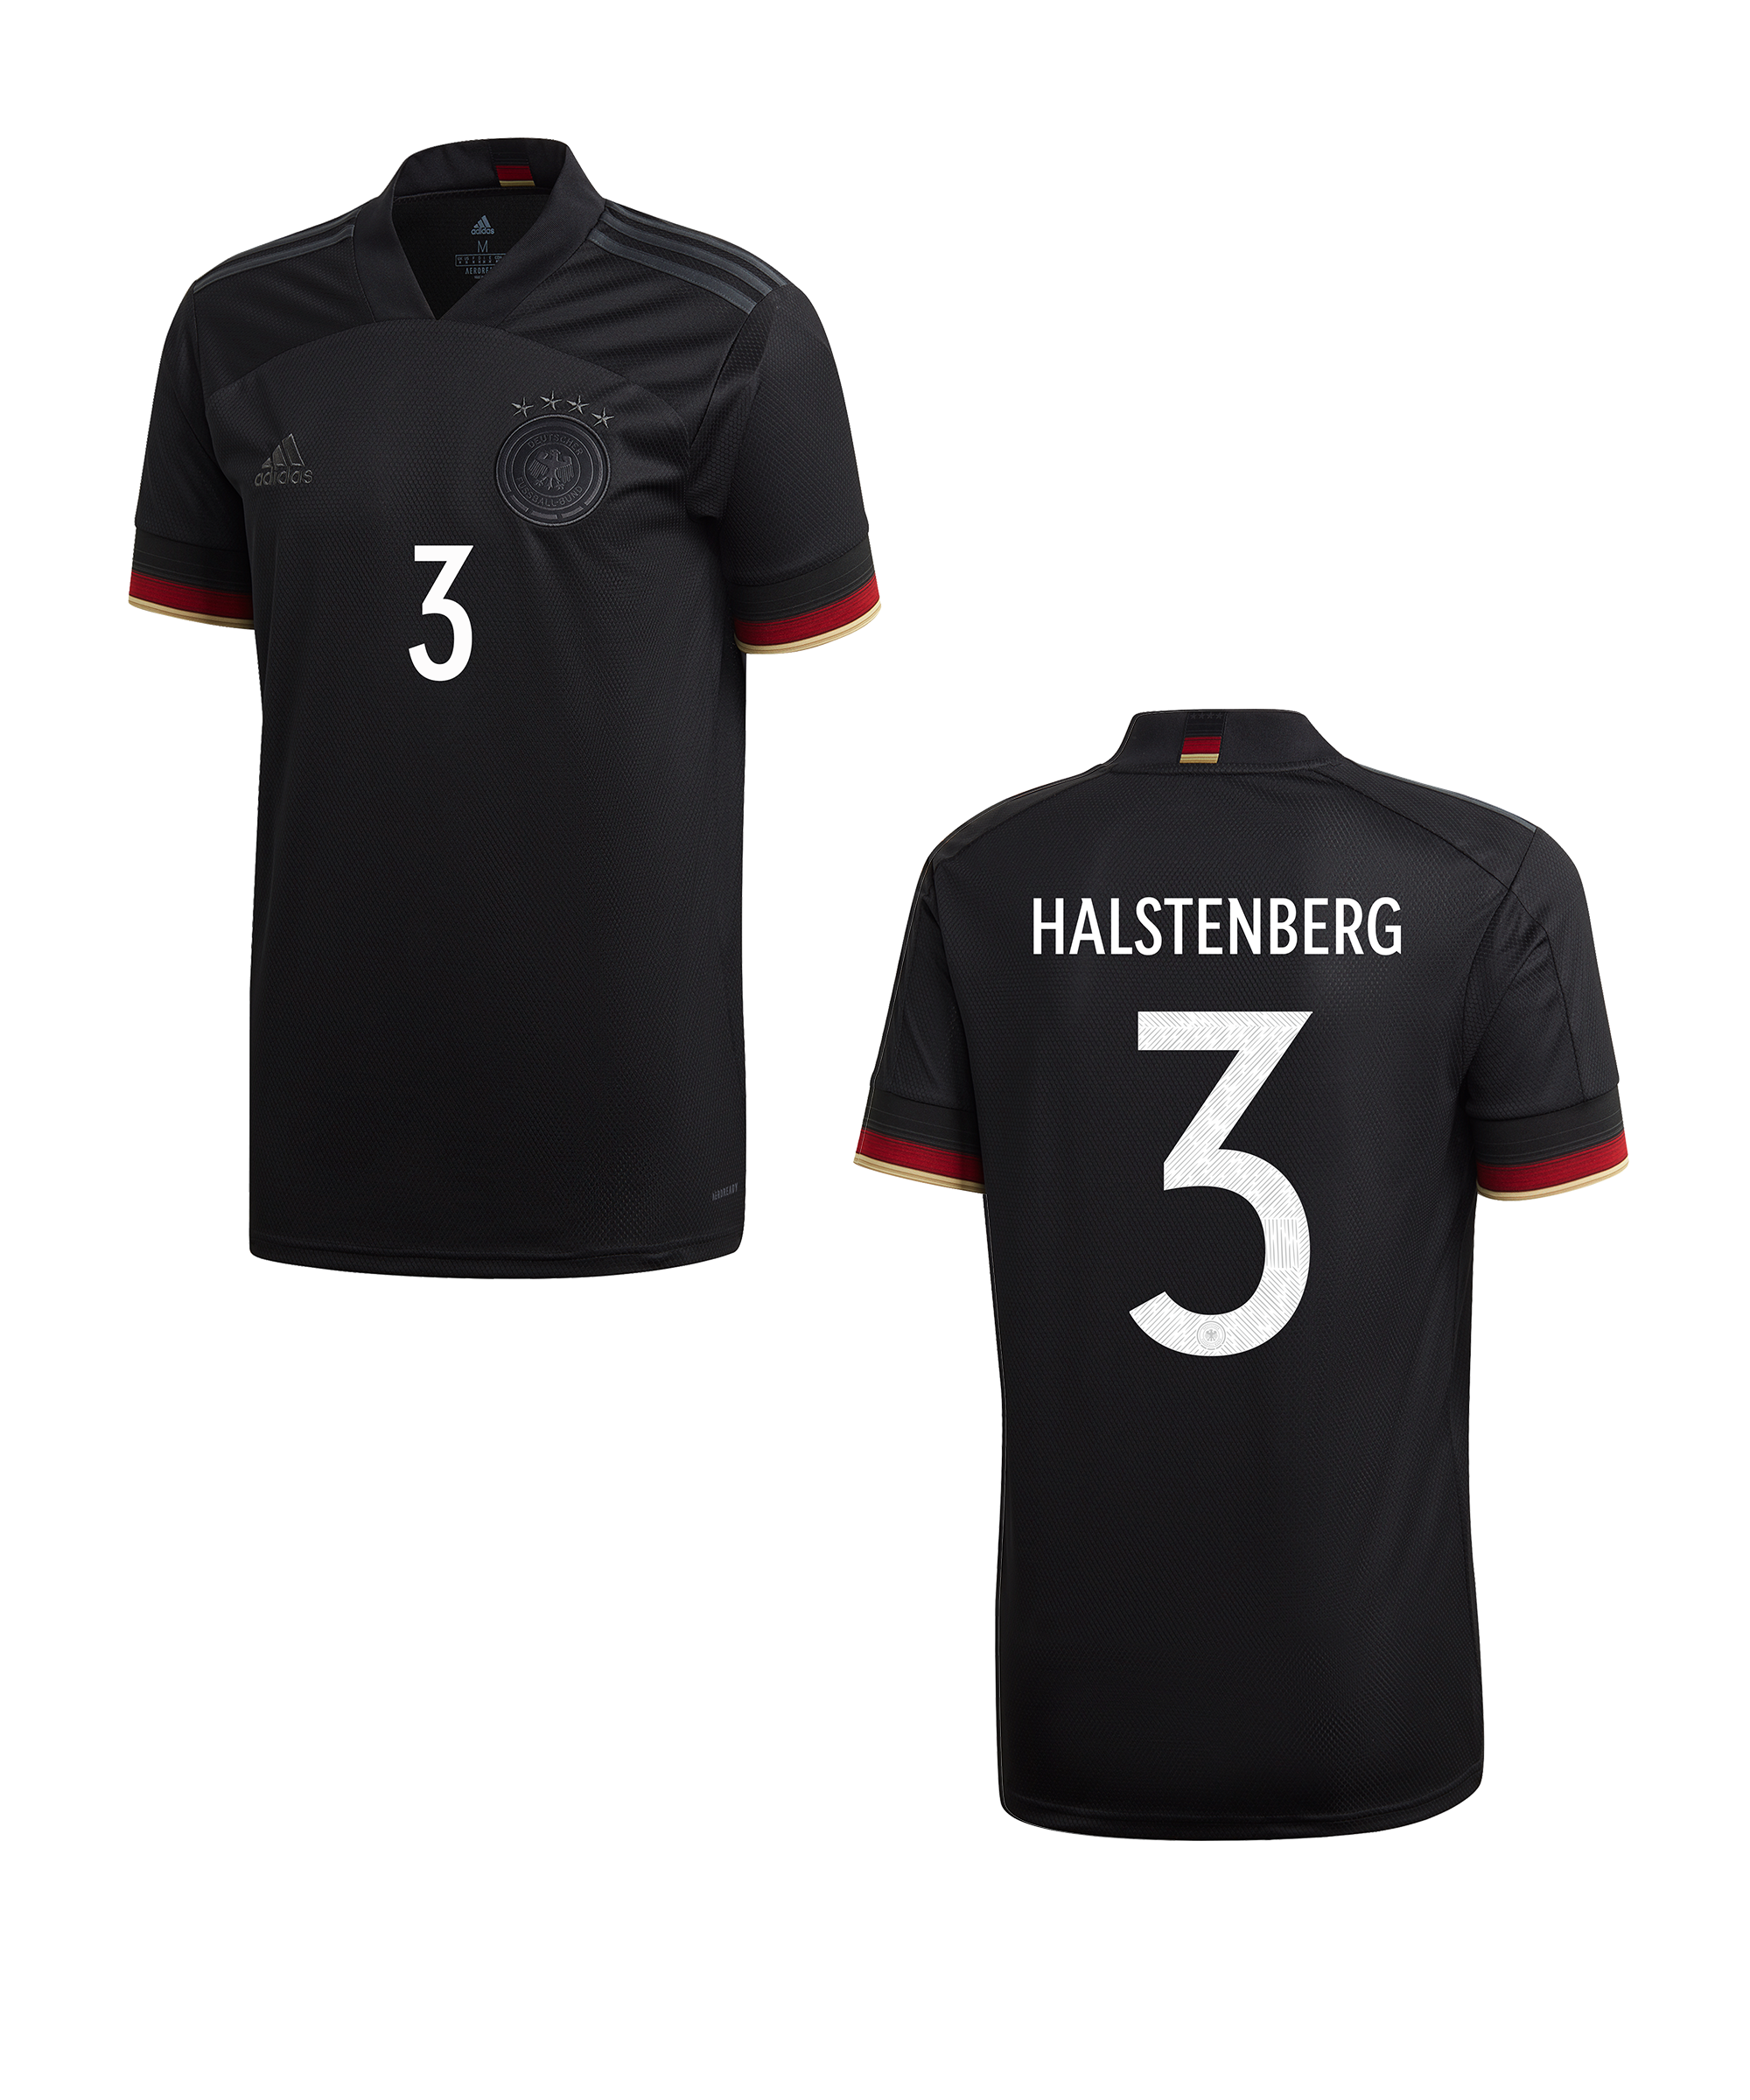 Maglia adidas DFB Deutschland t Away EM2020 Halstenberg